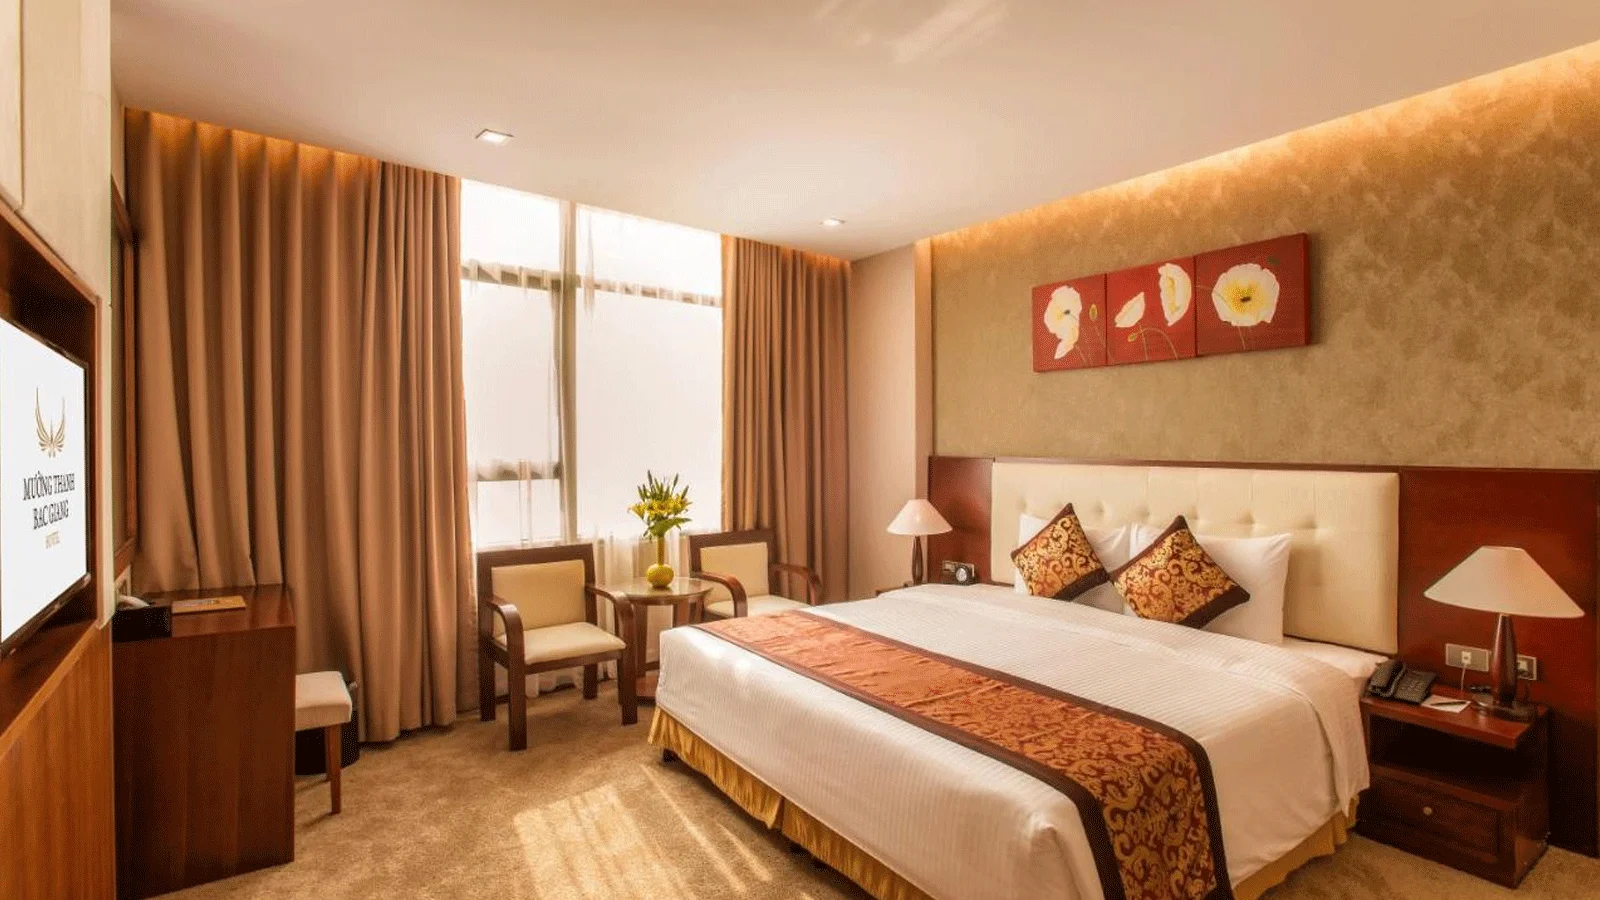 Khách sạn Mường Thanh Grand Bắc Giang Hotel